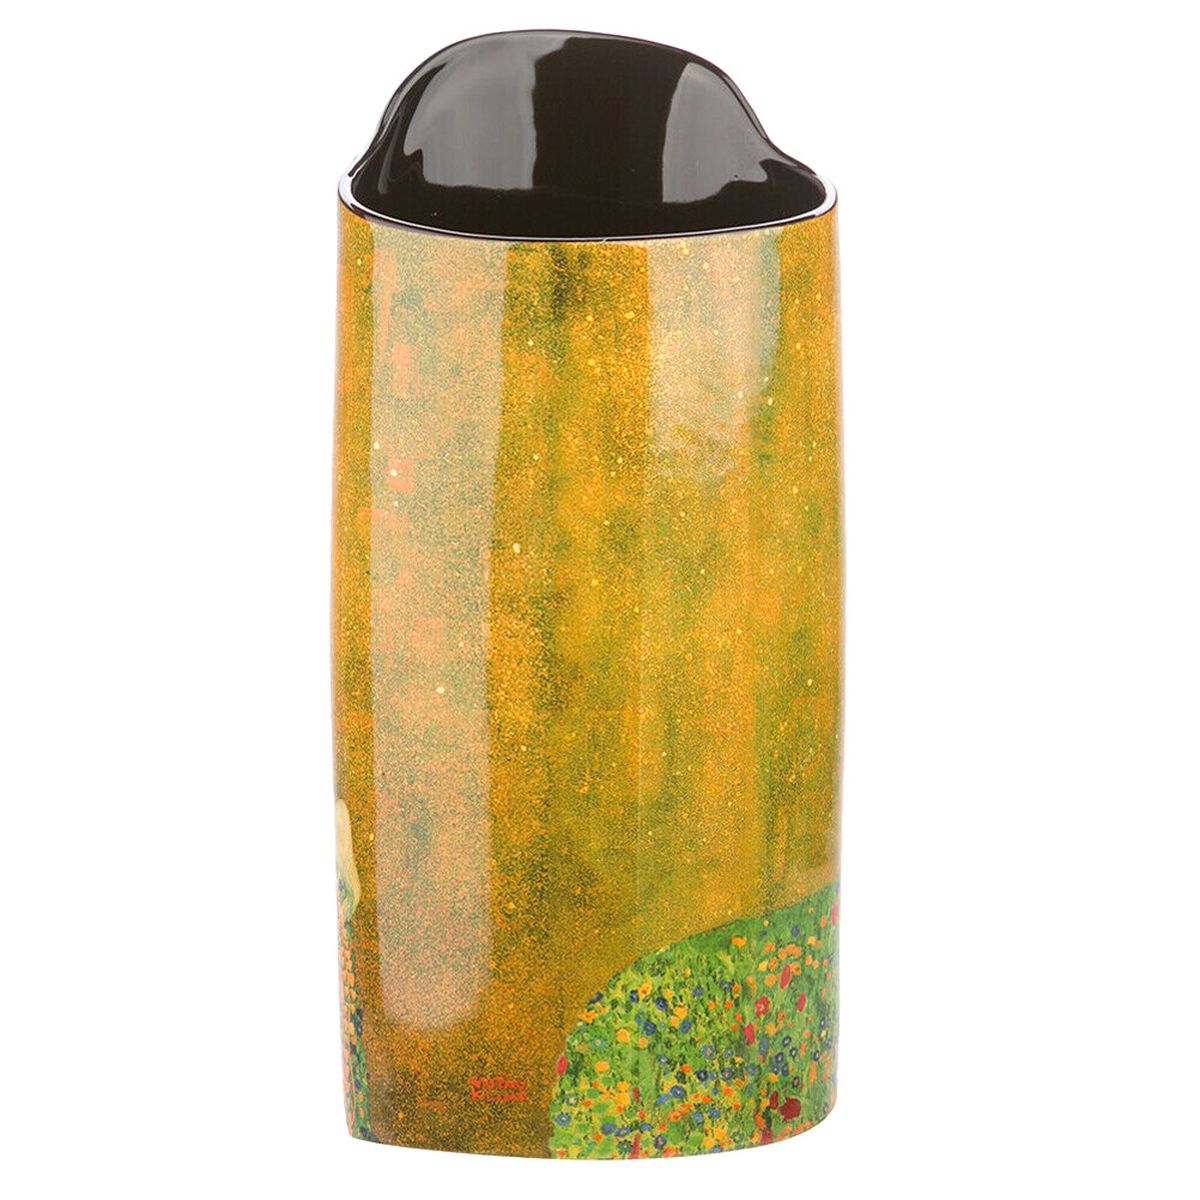 Vase en cramique silhouette - Klimt - Le Baiser 22.2 cm